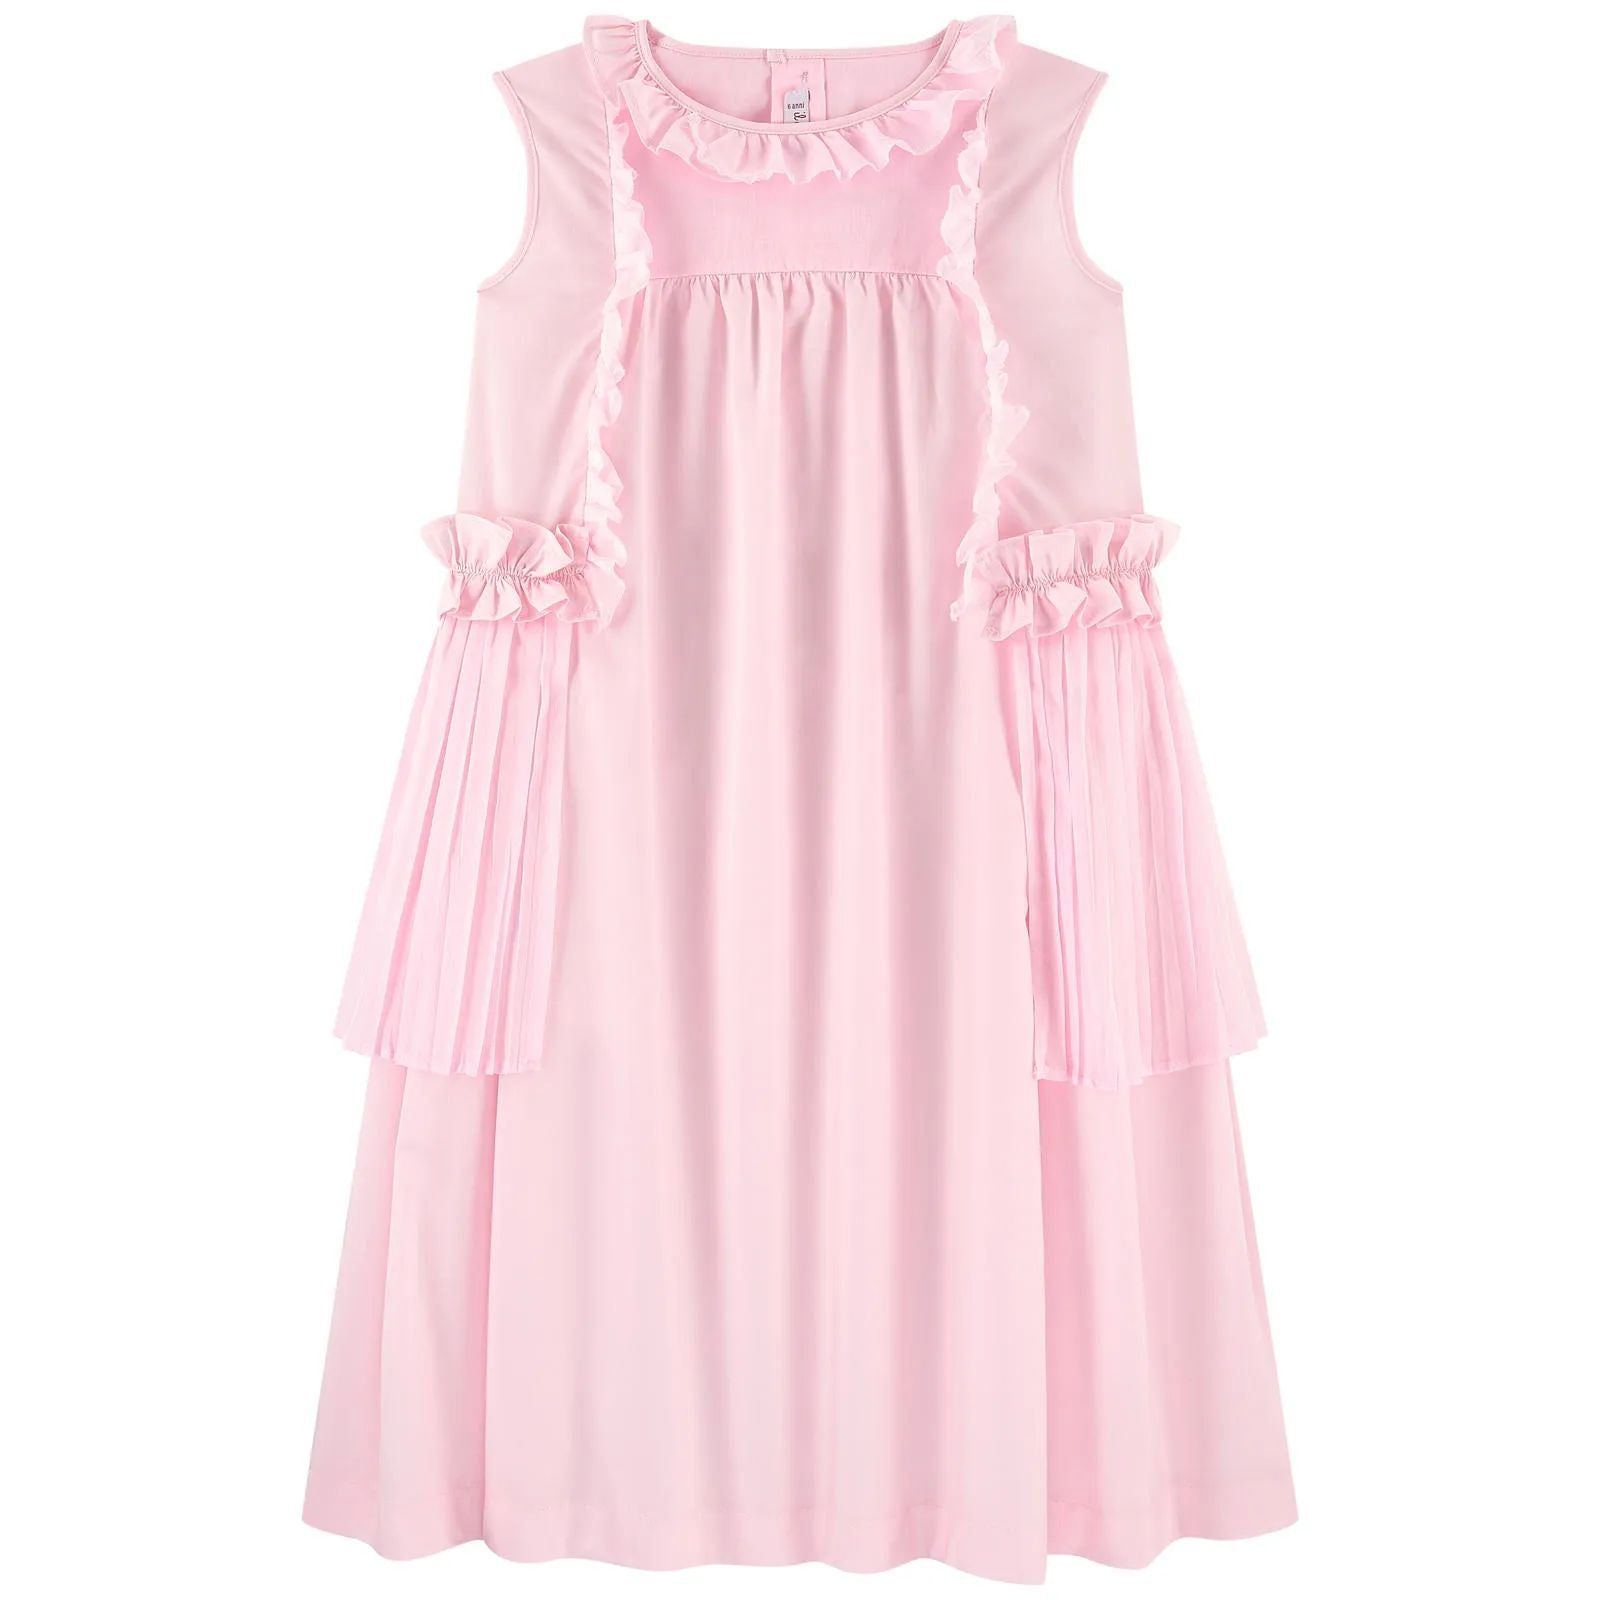 Girls Pink Ruffle Cotton Dress